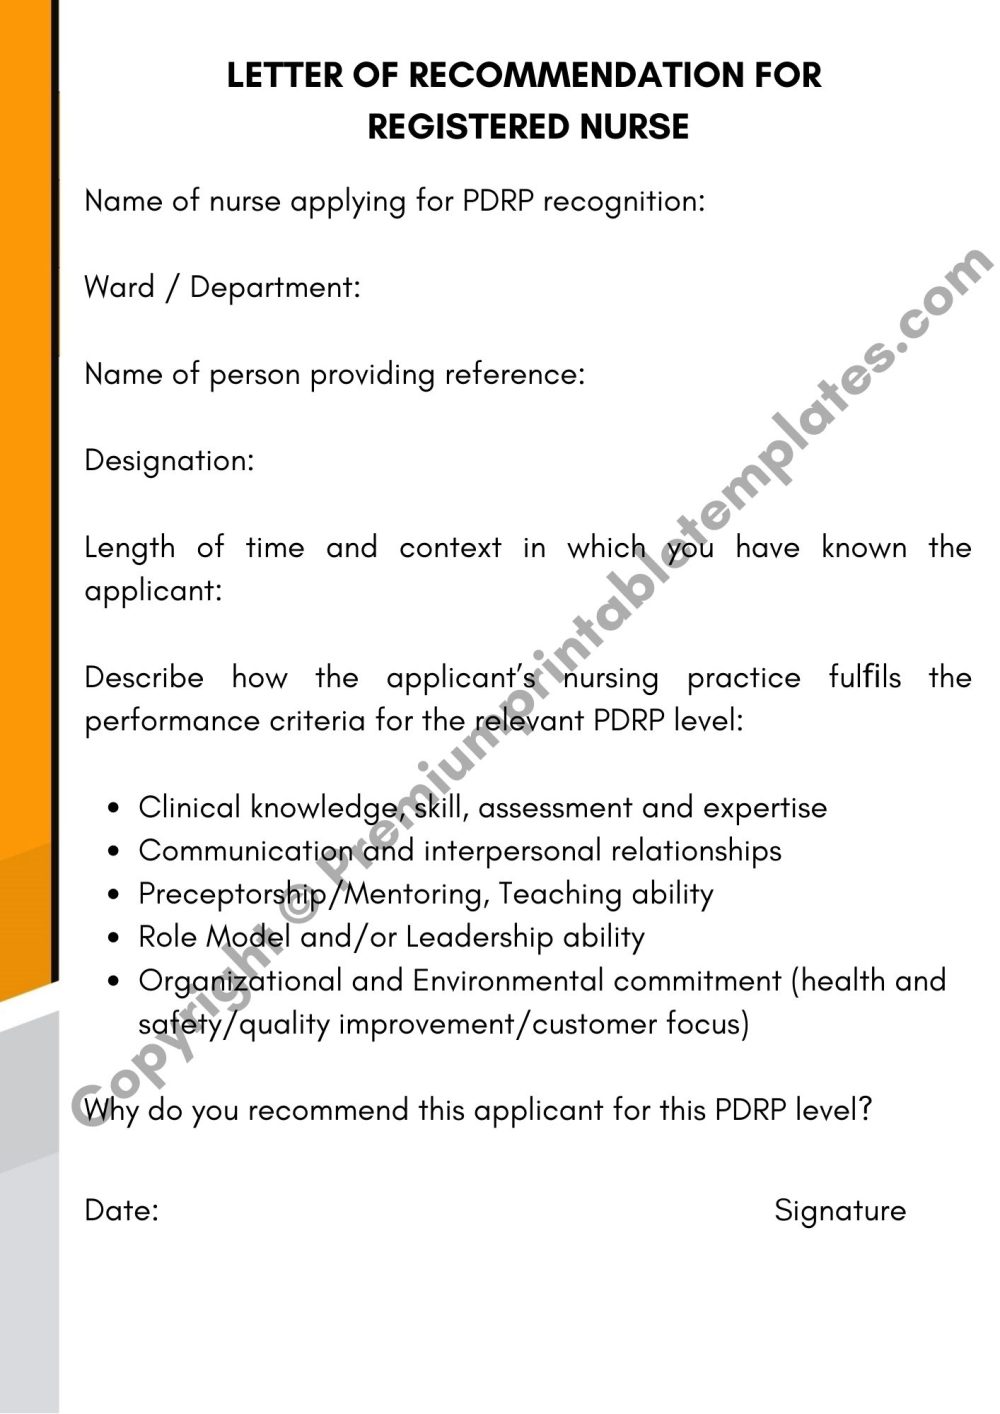 Letter Of Recommendation For Registered Nurse